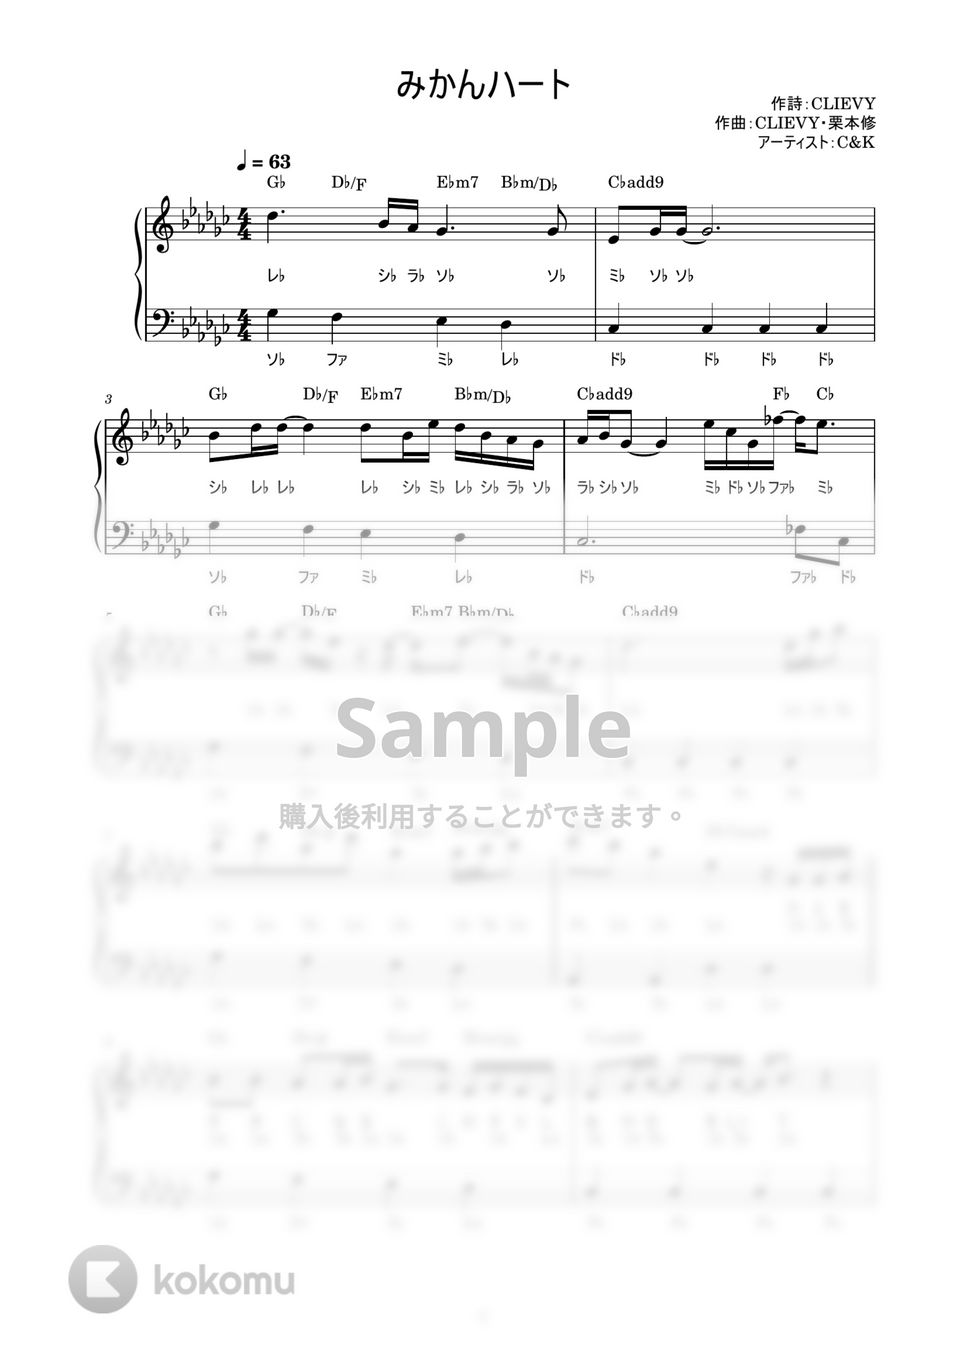 C&K - みかんハート (かんたん / 歌詞付き / ドレミ付き / 初心者) by piano.tokyo